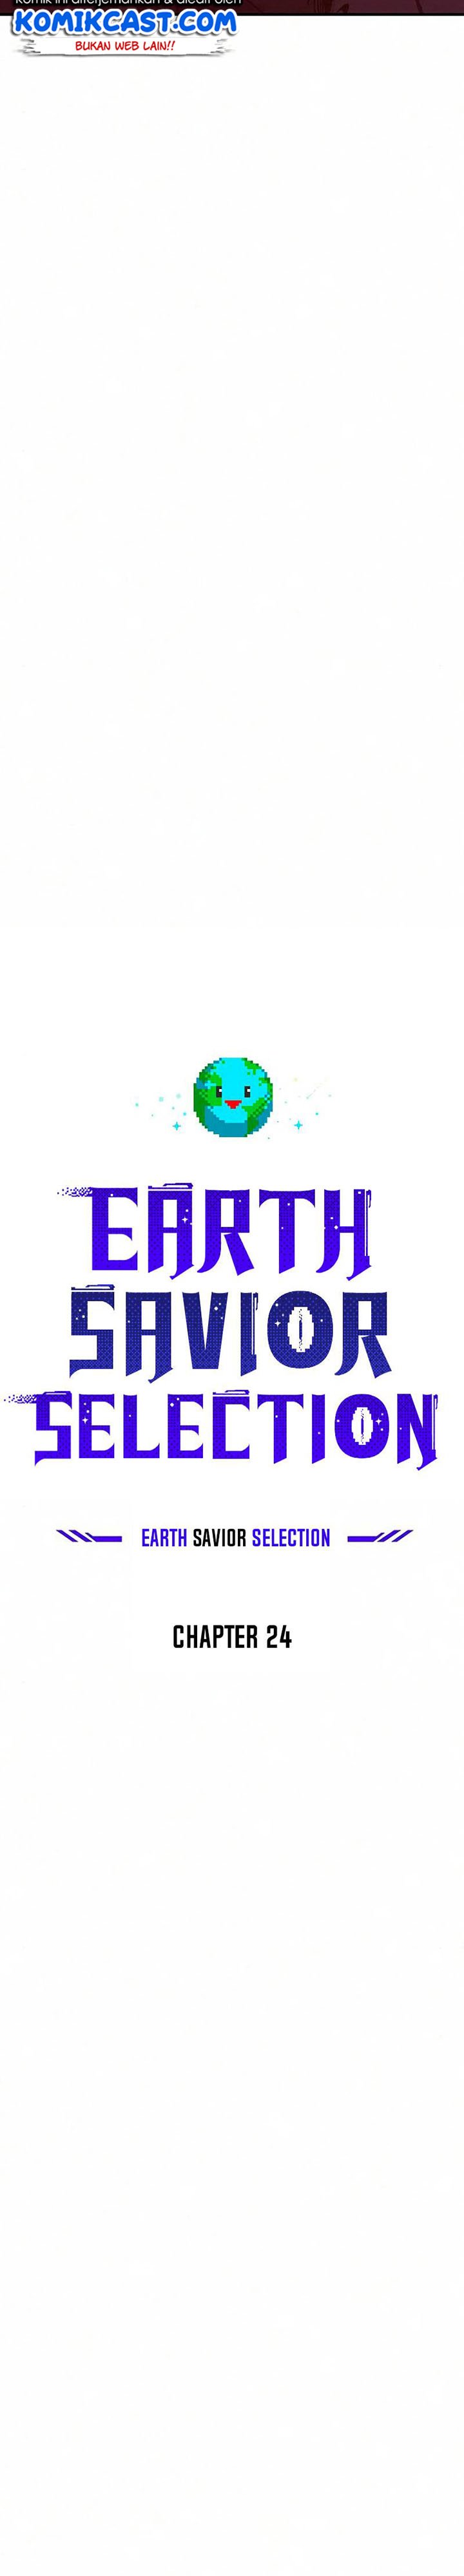 The Earth Savior Selection Chapter 24